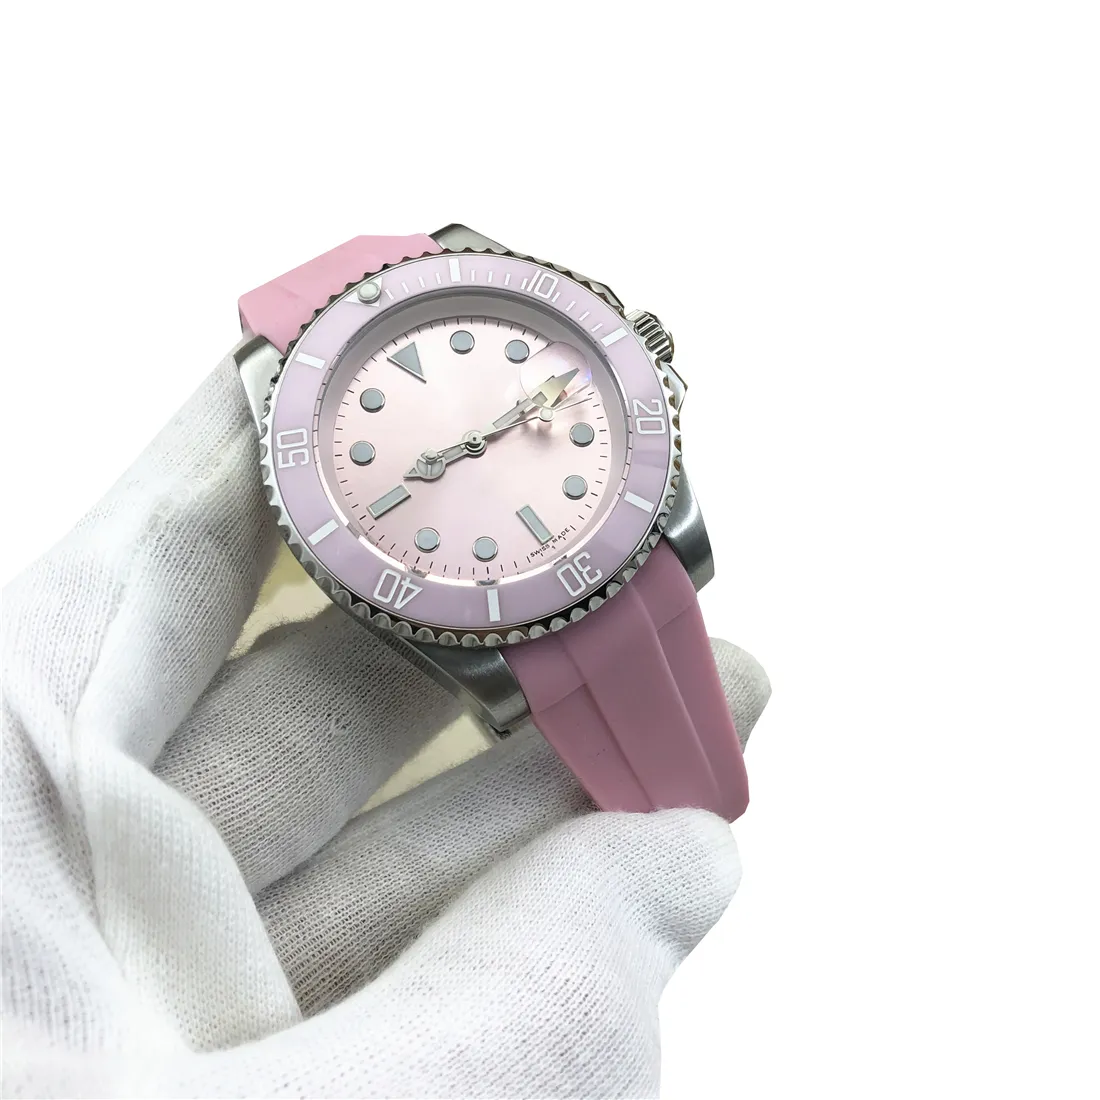 Nowy mechanizm automatyczny 40MM gładka ramka zegarka zegarki gumowe trend młodzieżowy Era INS Ice berry proszek Dial 1166100 męskie zegarki na rękę